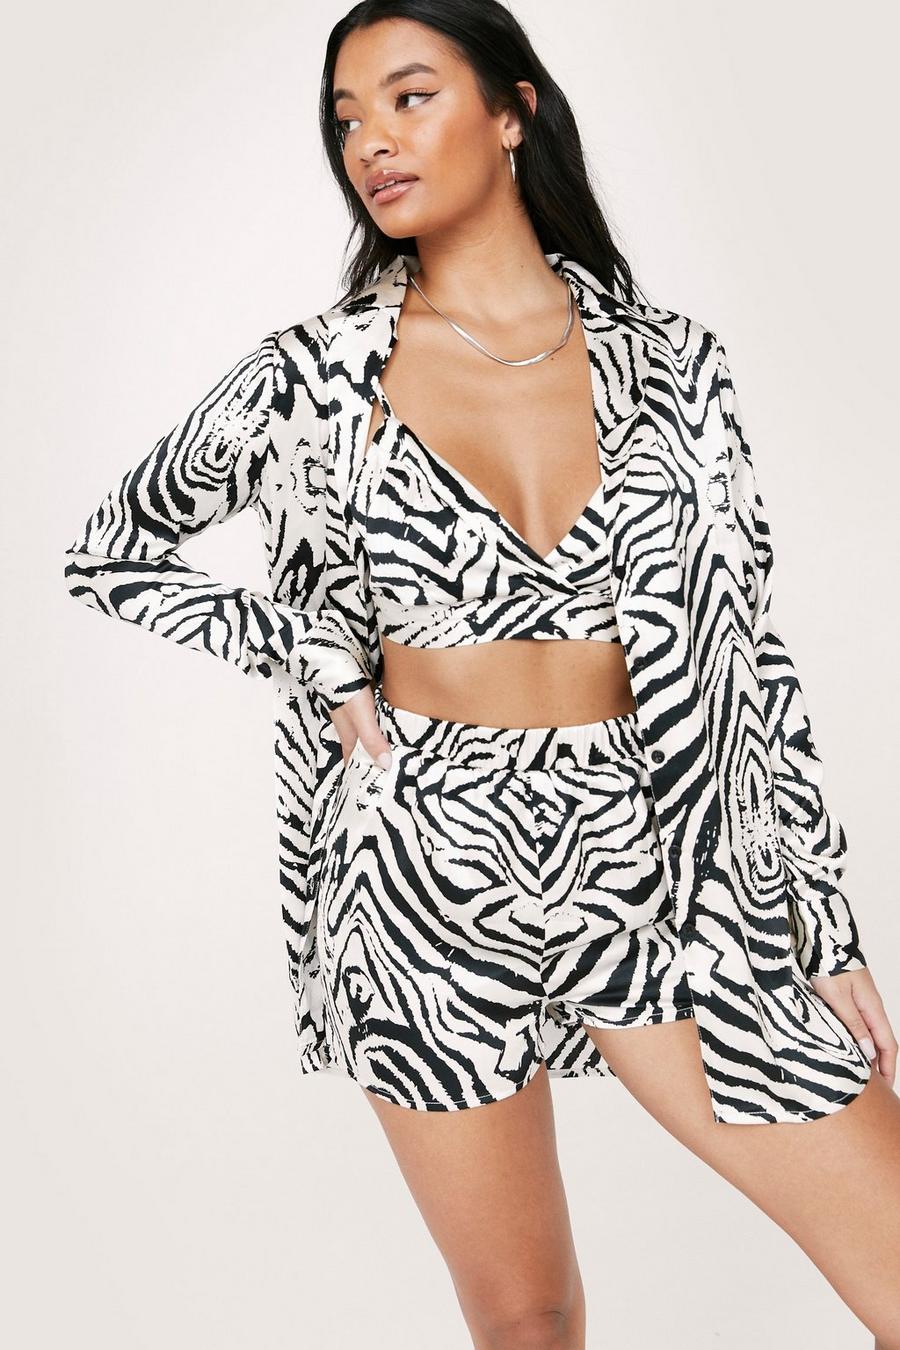 Satin Zebra Bralet Short Shirt 3 Pc Pajama Set